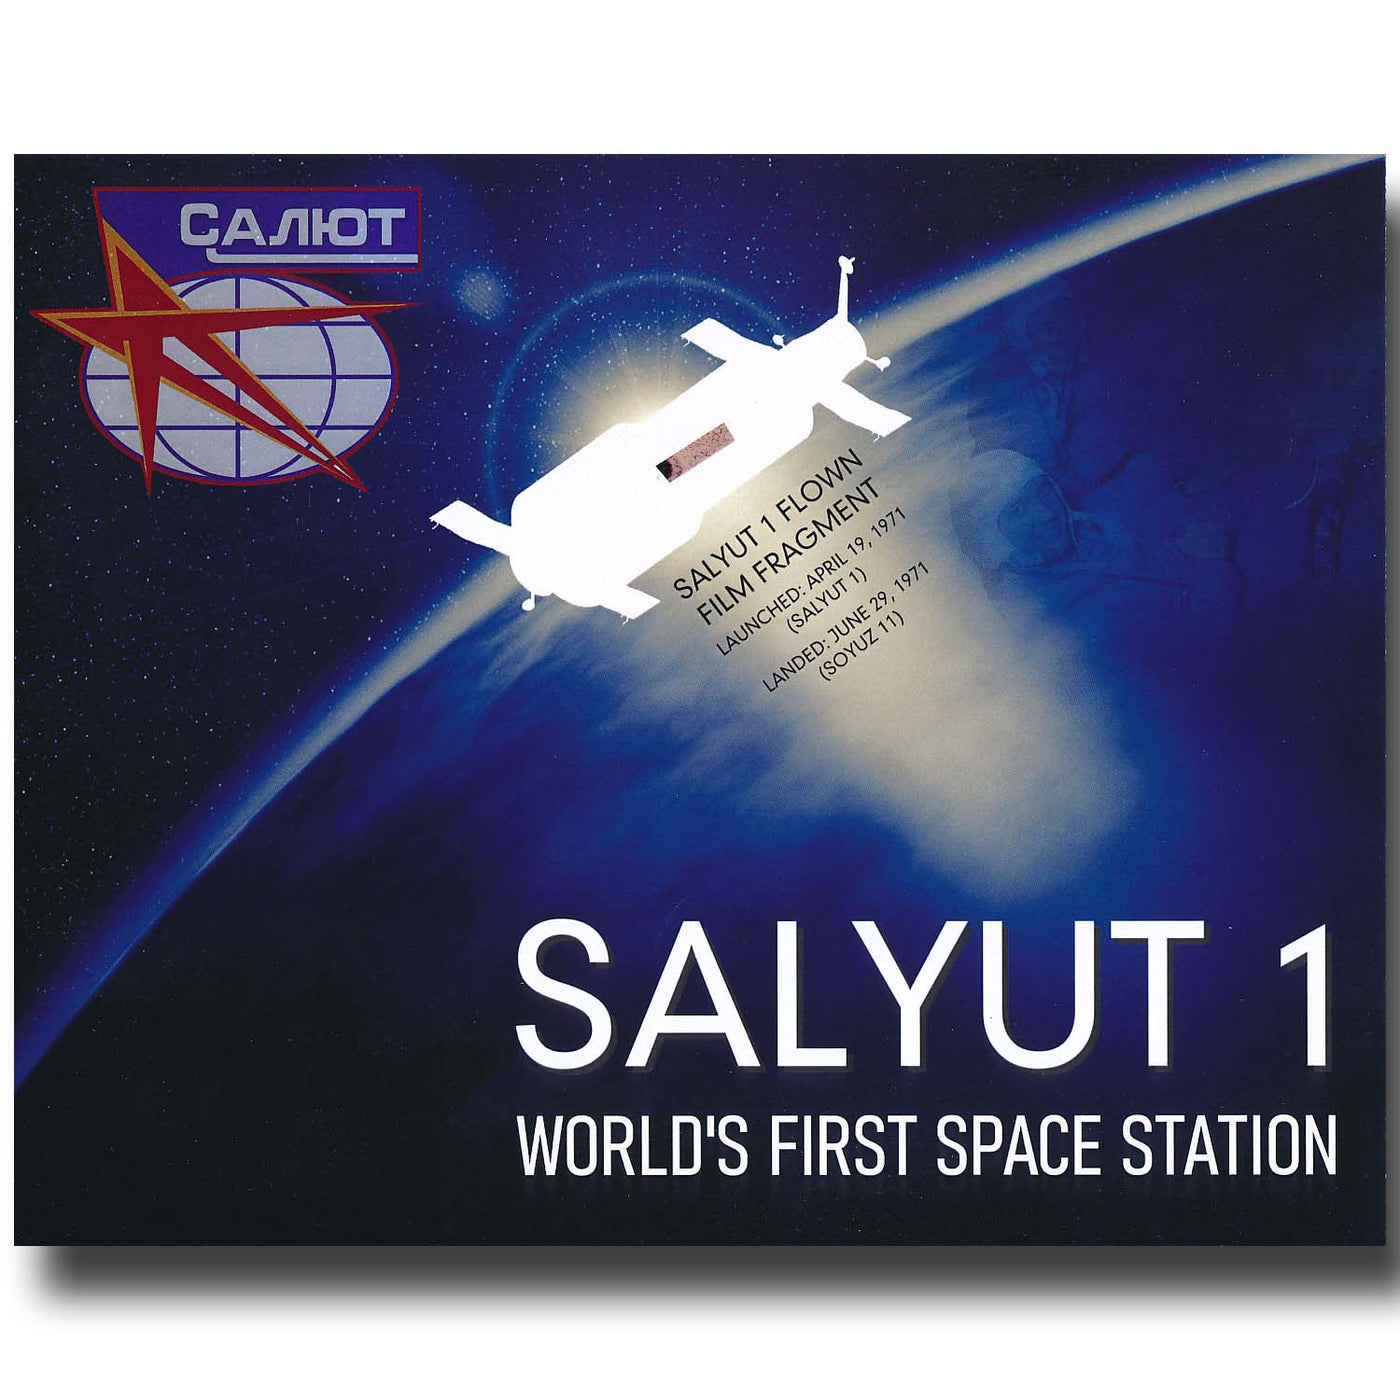 Salyut 1 - world's first spacestation - FLOWN film fragment presentation